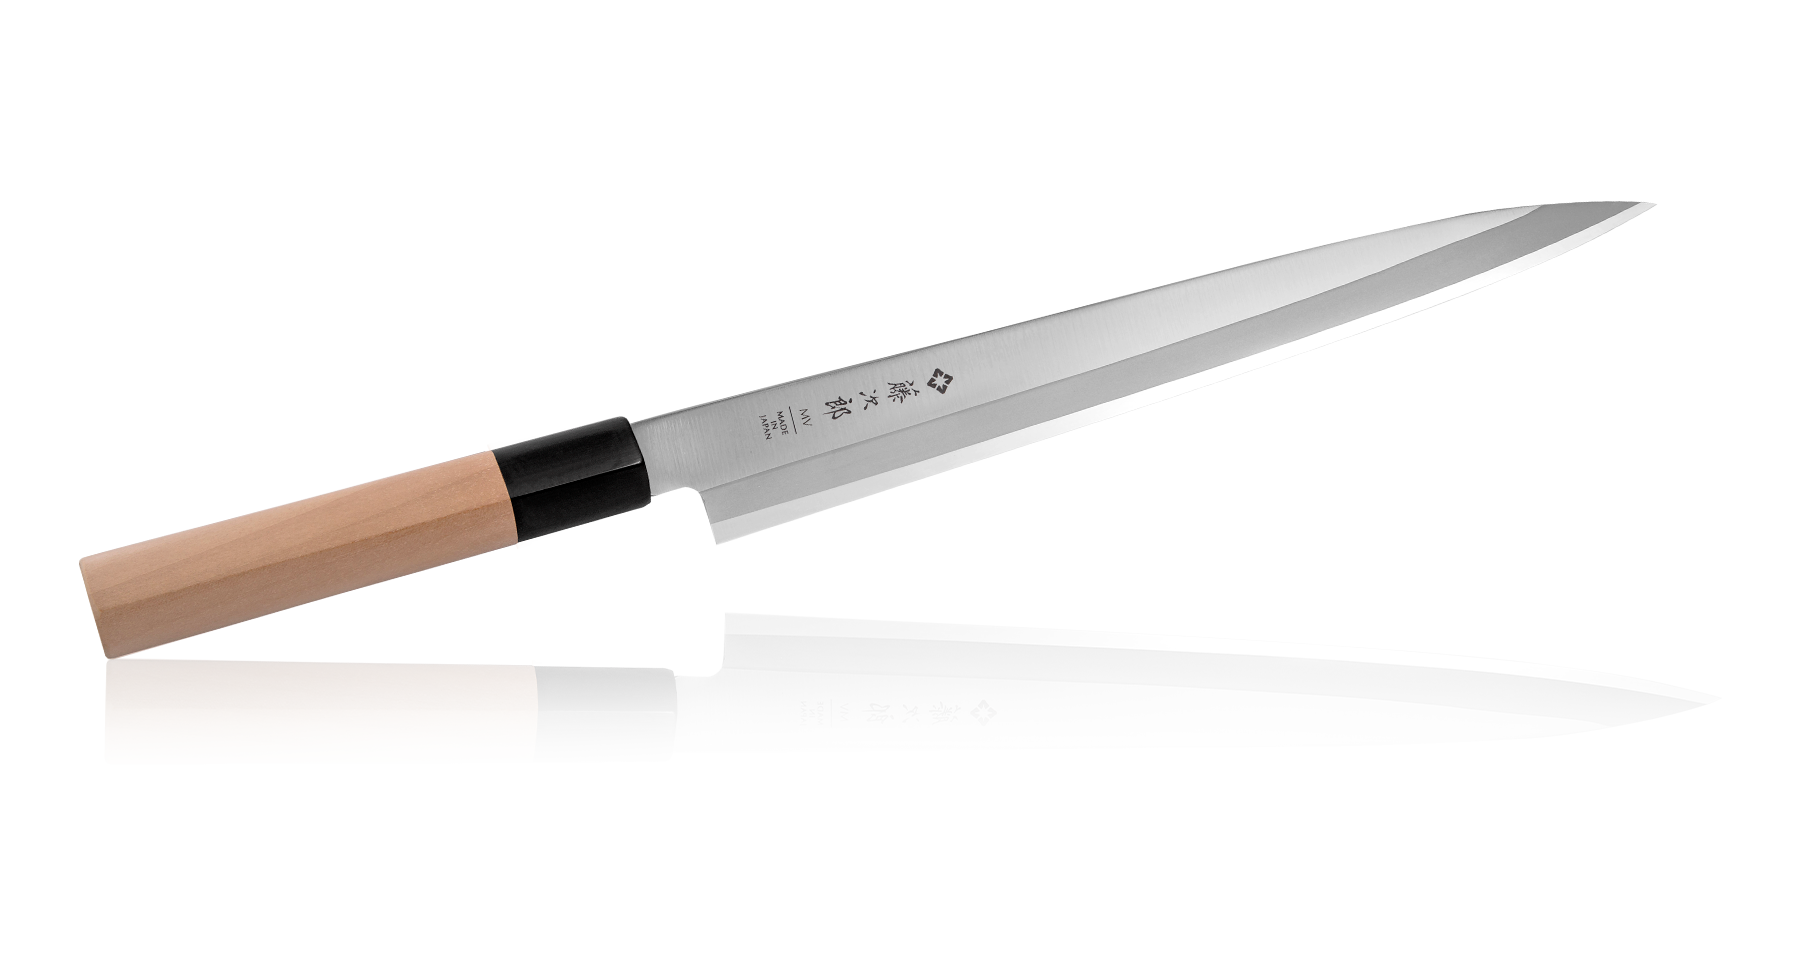 Tojiro - Coltello tradizionale giapponese, per sushi / sashimi, professionale, in acciaio molibdeno vanadio, lama ultra affilata, manico in legno Yanagiba 24 cm (F-1057)